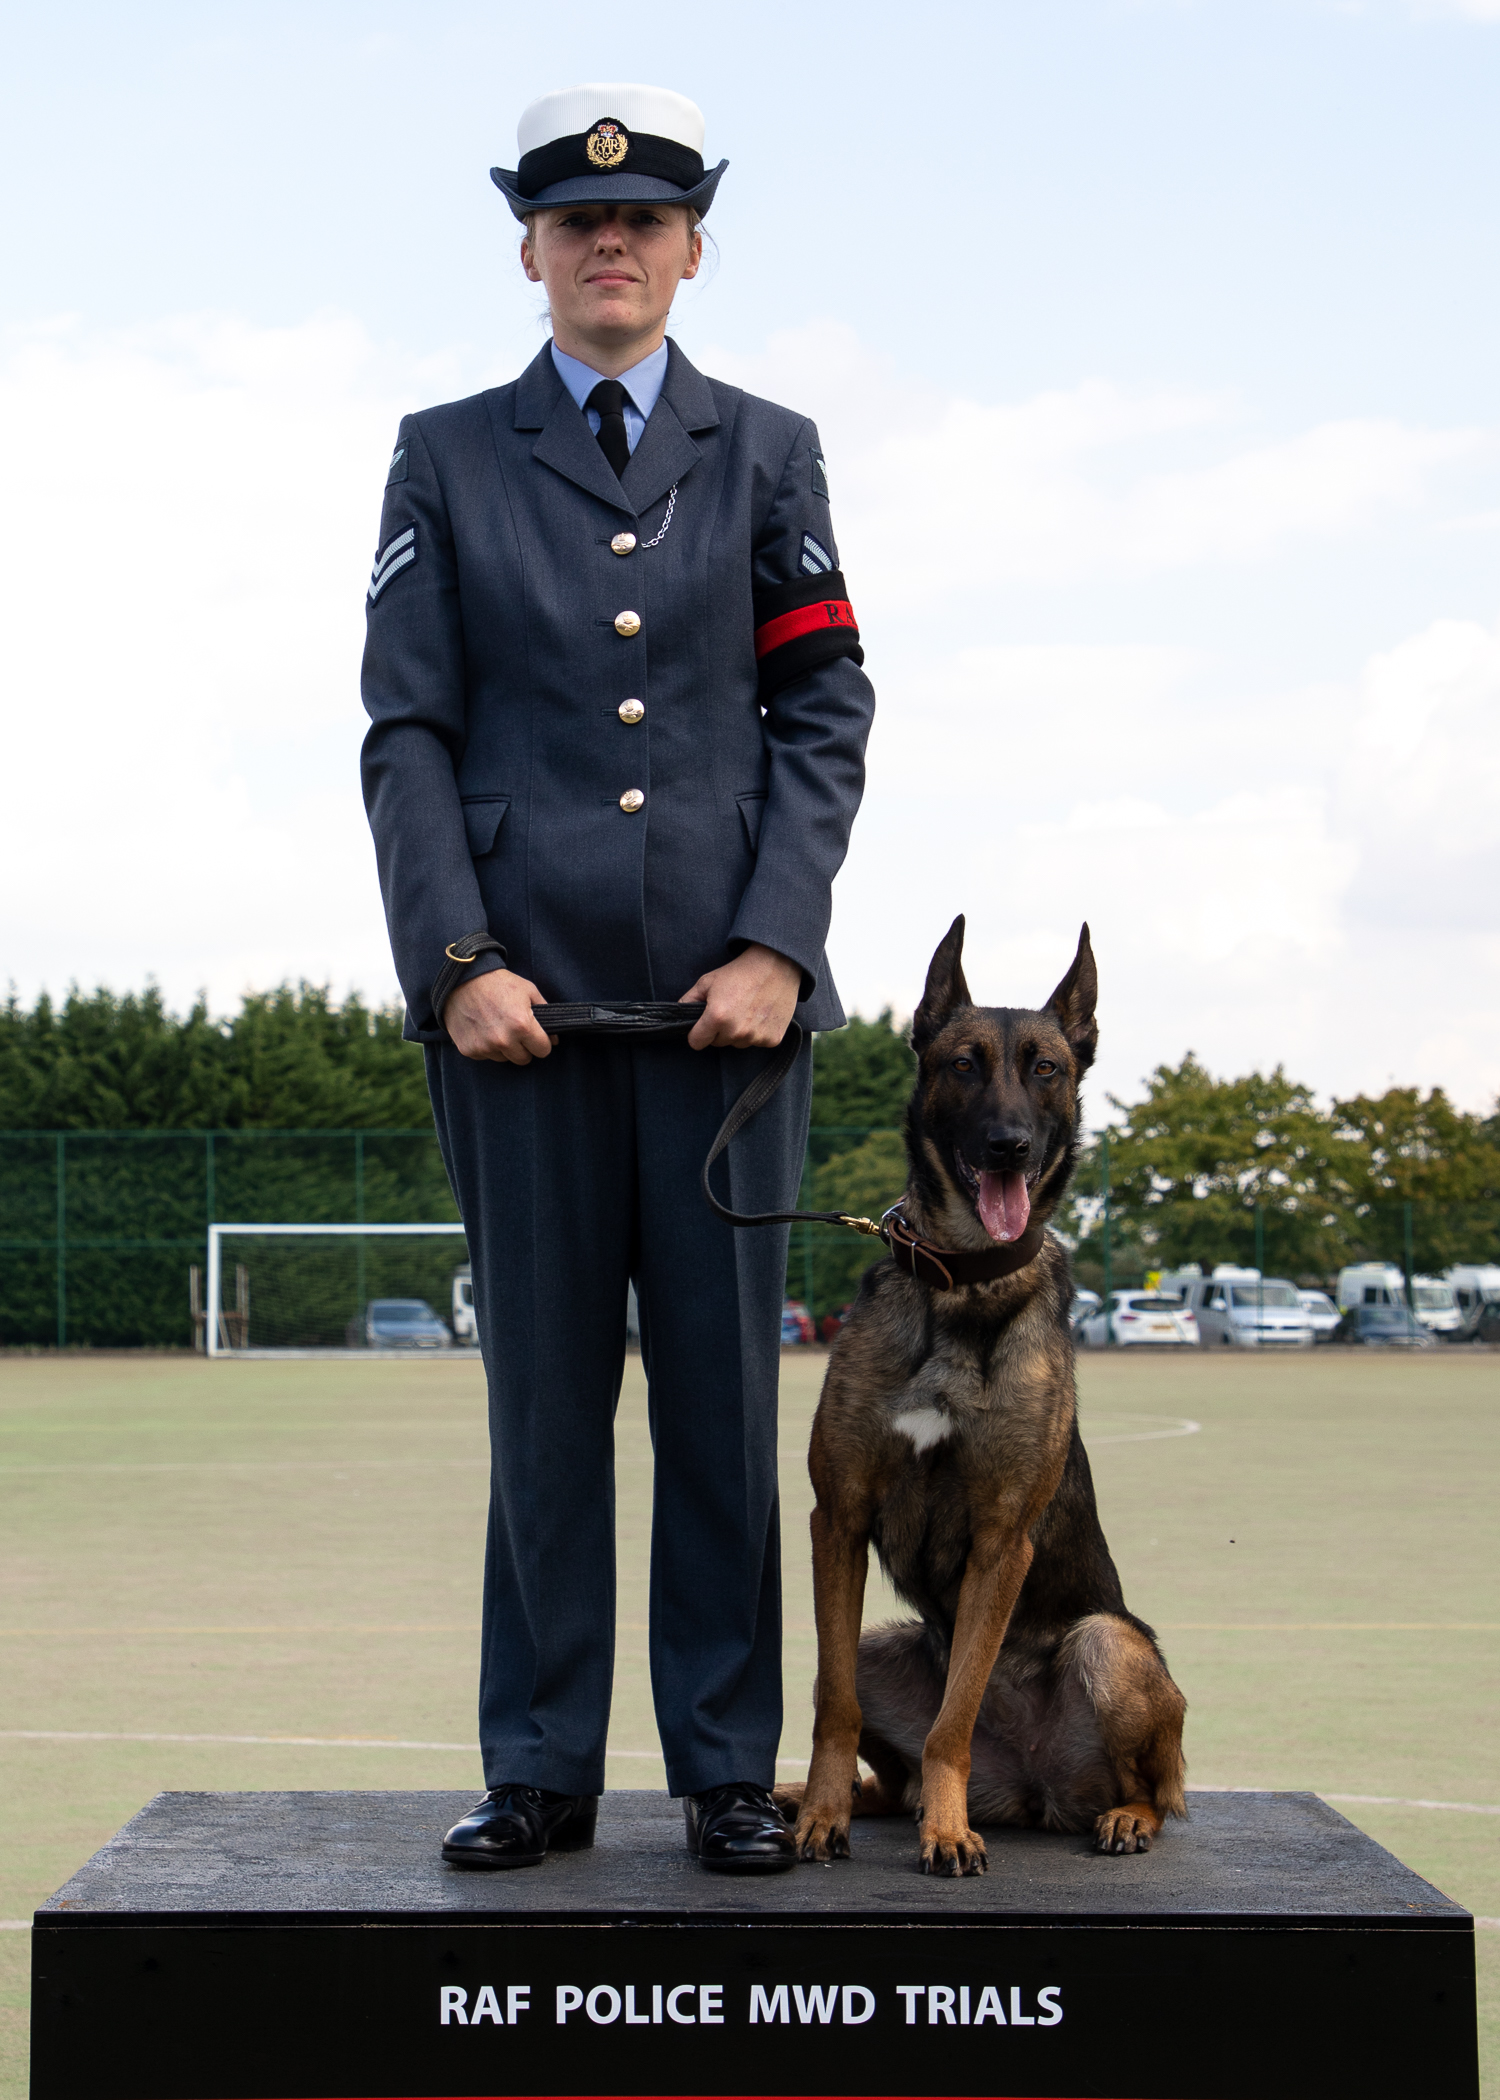 RAF Police Handler and dog stand on podium. 